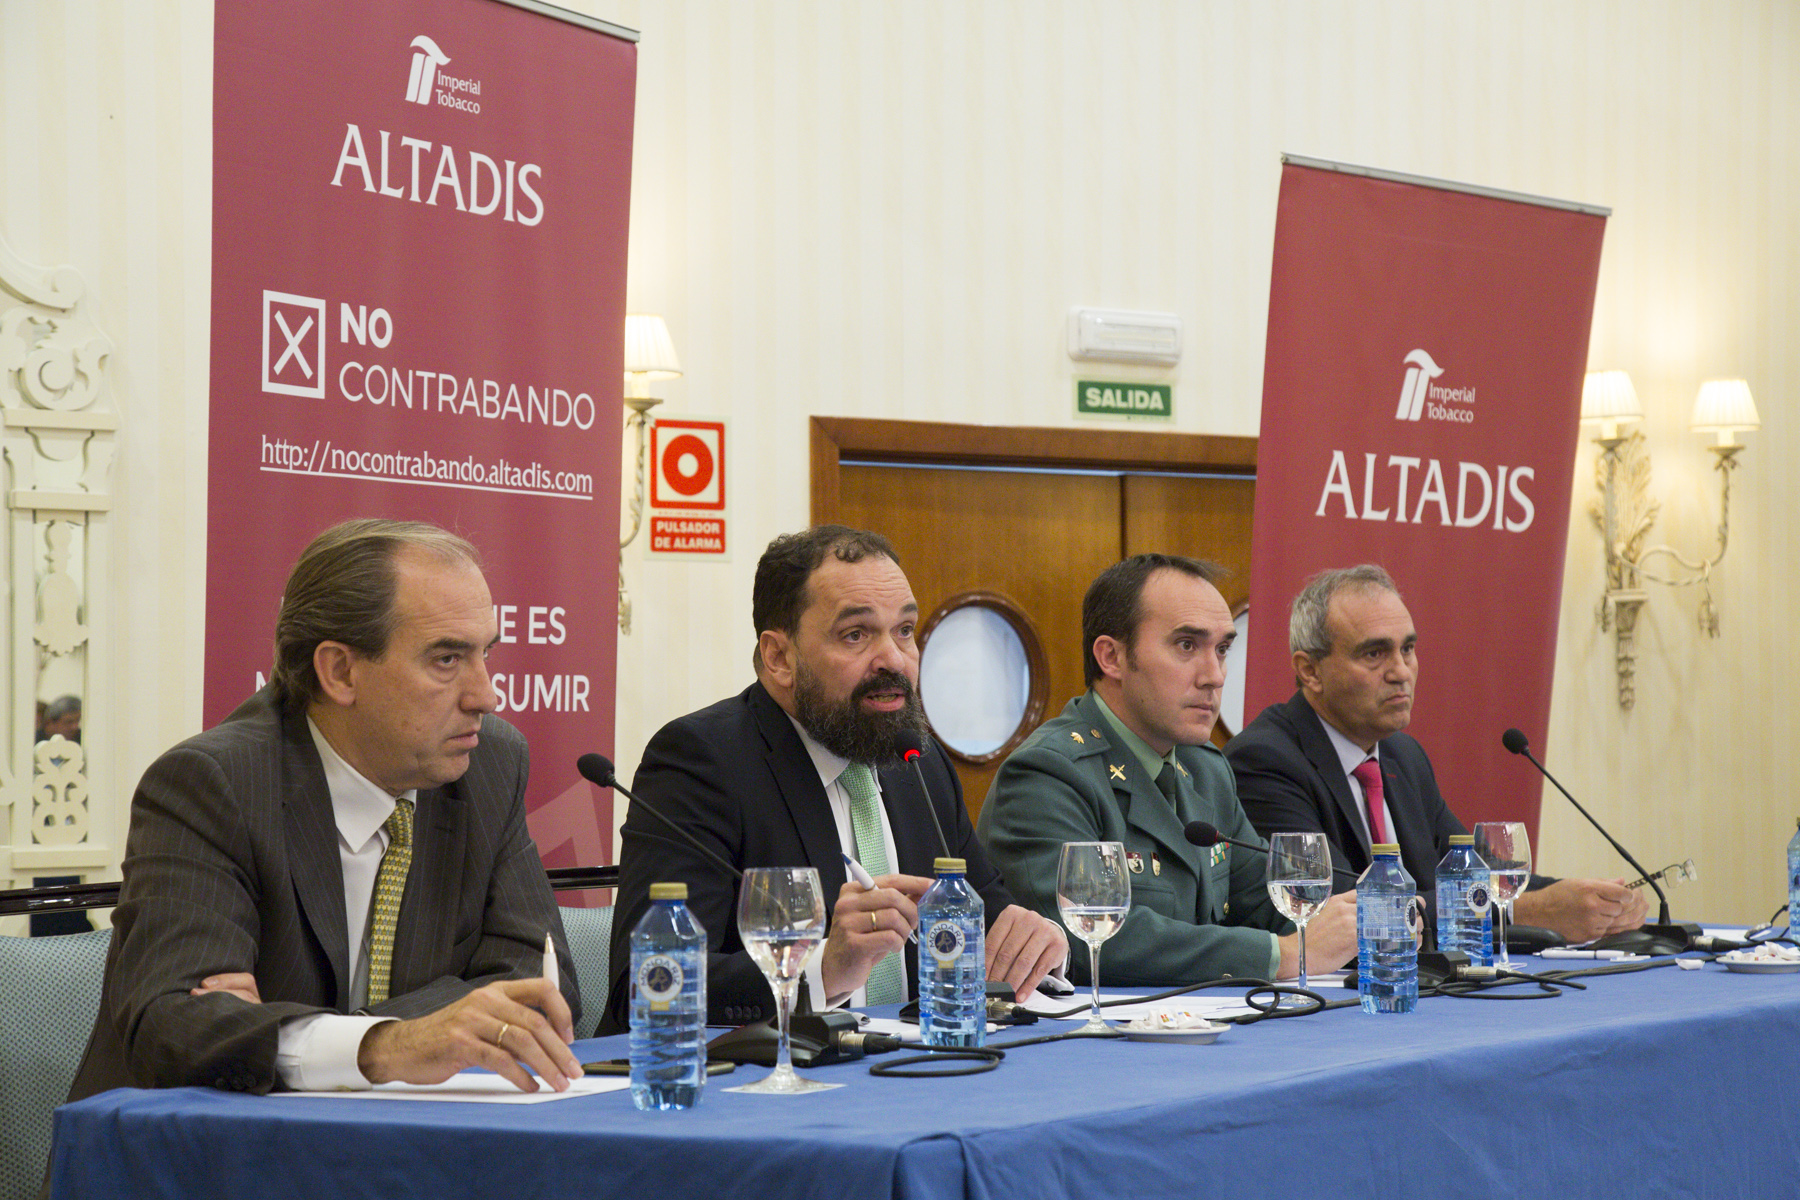 Ignacio Millán, director jurídico de Altadis, repasa la legislación sobre contrabando en España